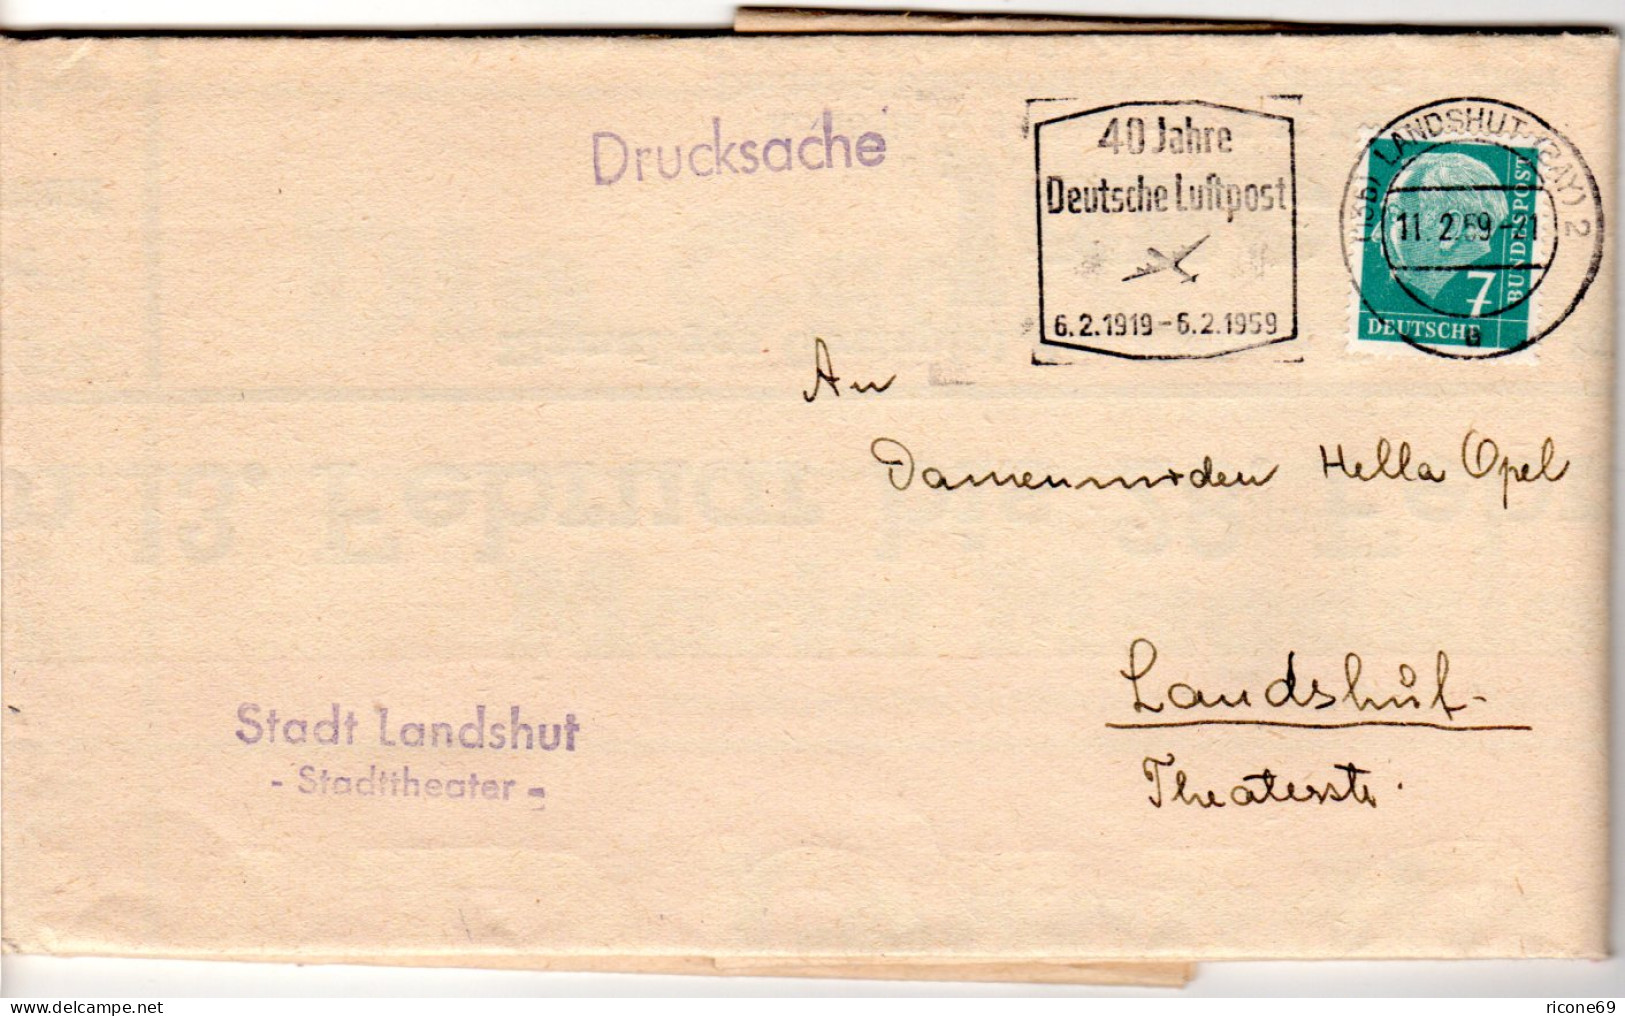 BRD 1959, 7 Pf. Auf Stadttheater Landshut Spielplan Drucksache - Cartas & Documentos